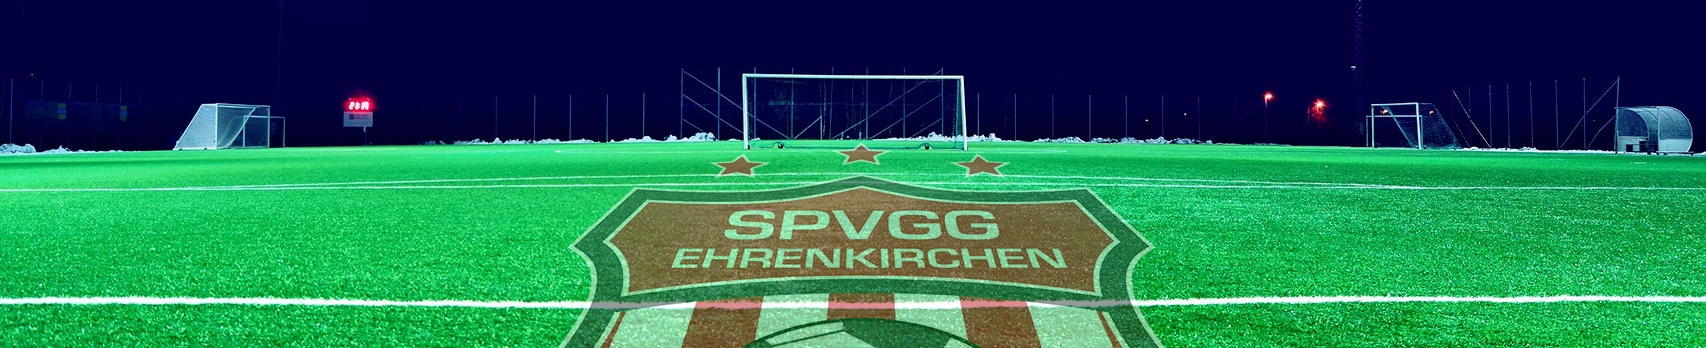 Spvgg. Ehrenkirchen Title Image